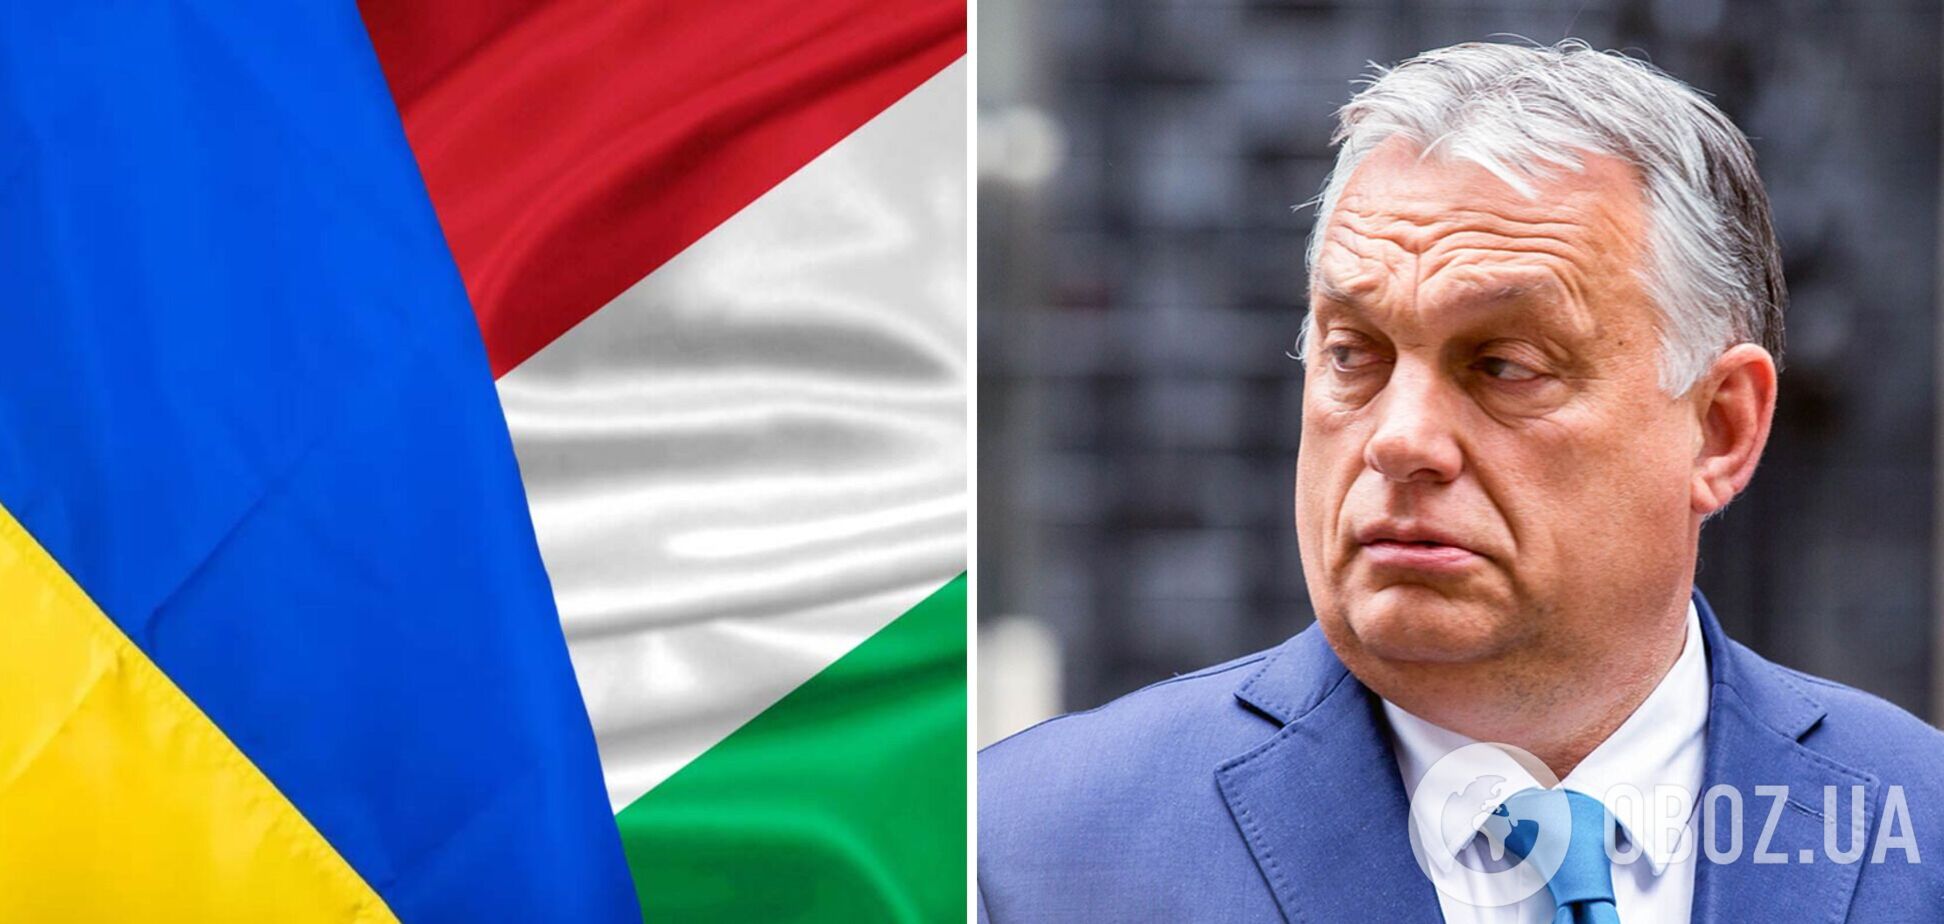 Победа в войне Украины есть и венгерским интересом, но не прокремлевского Орбана